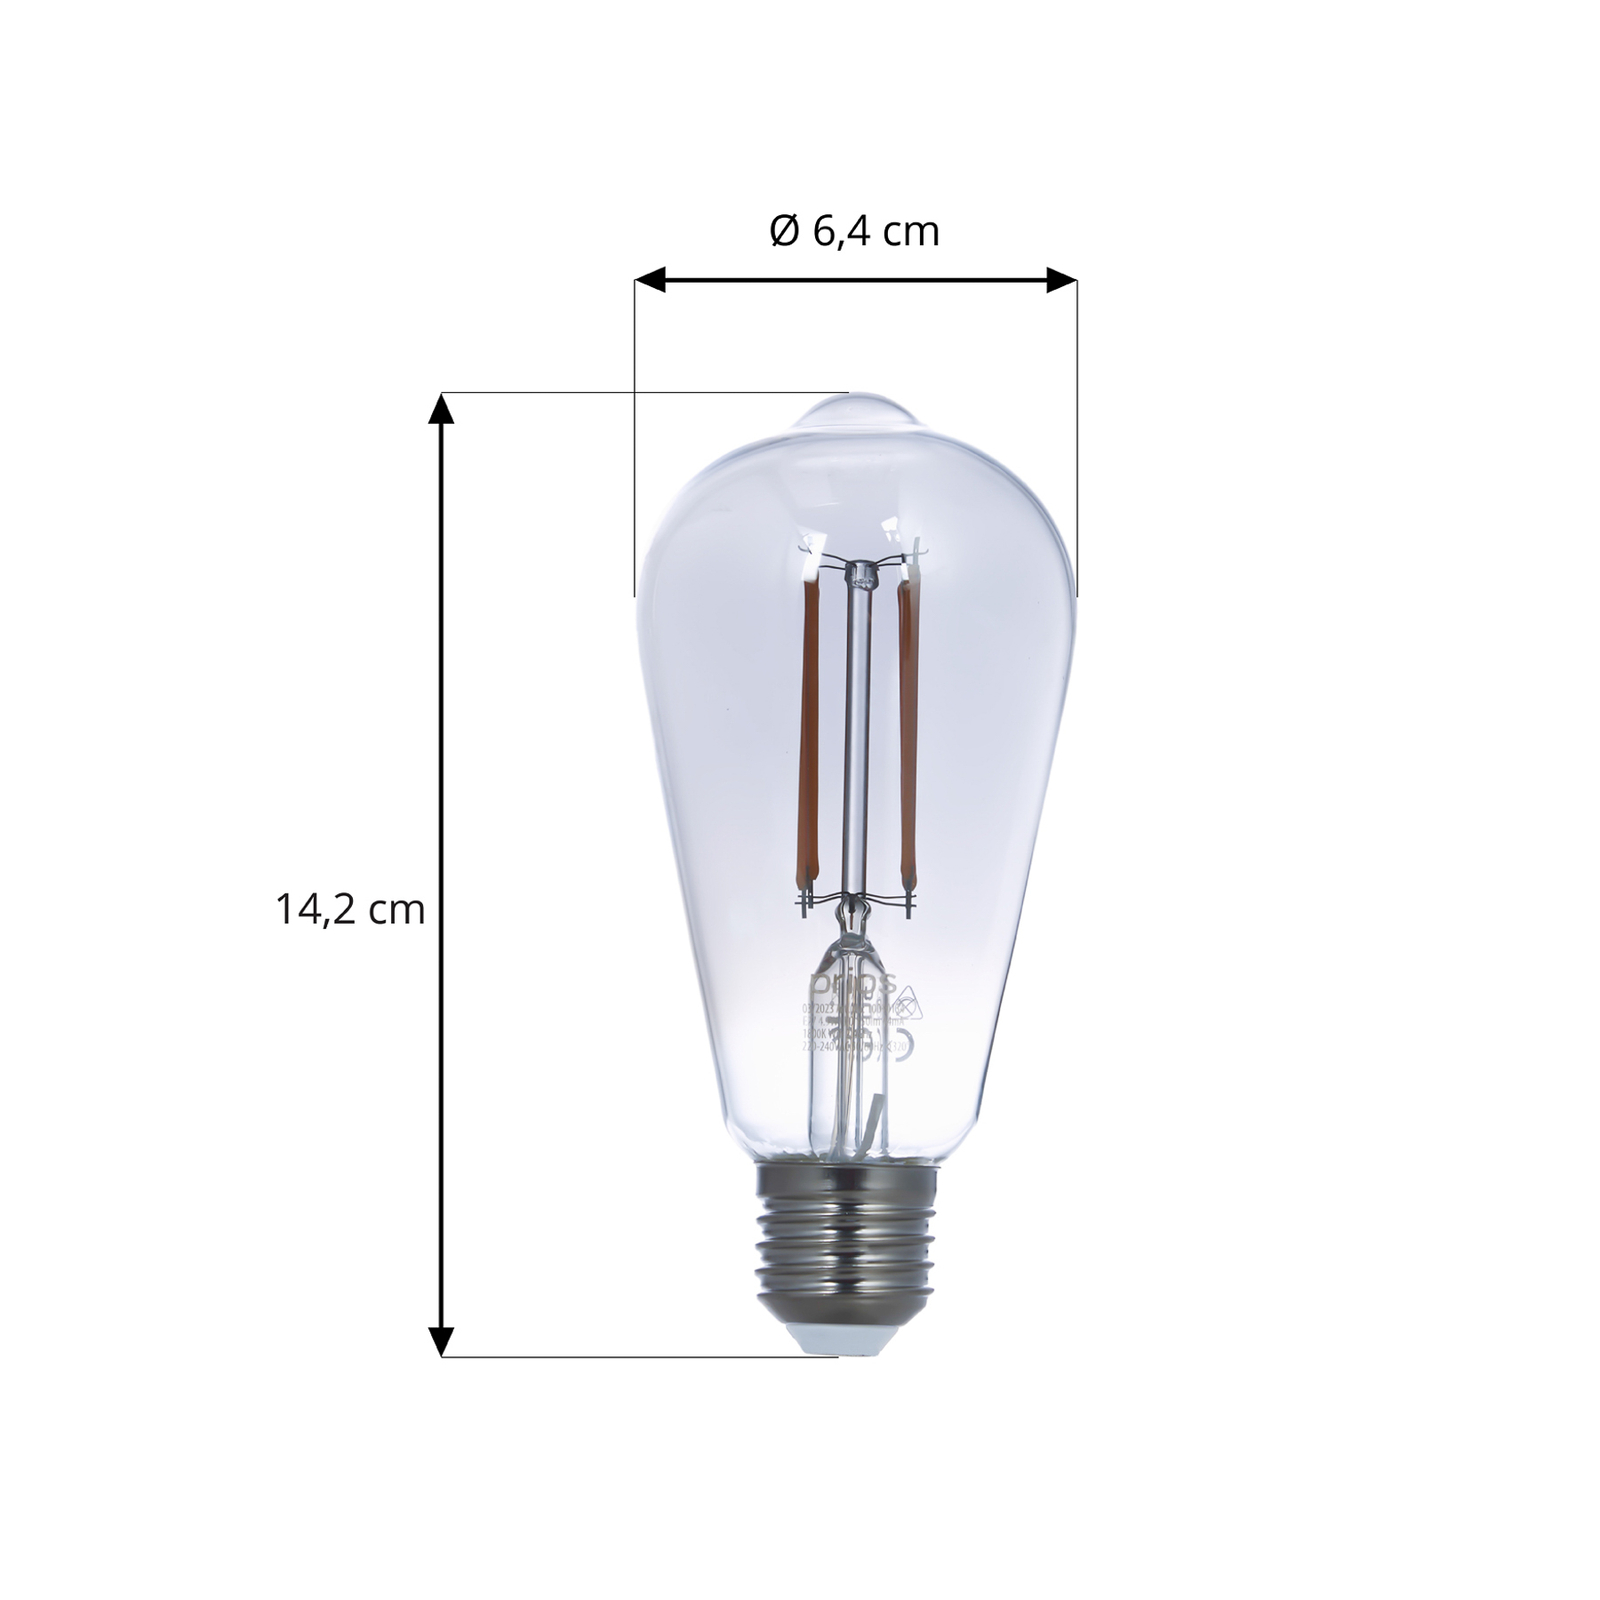 Prios LED-Lampe E27 ST64 rauchgrau WLAN 4,9W 3er